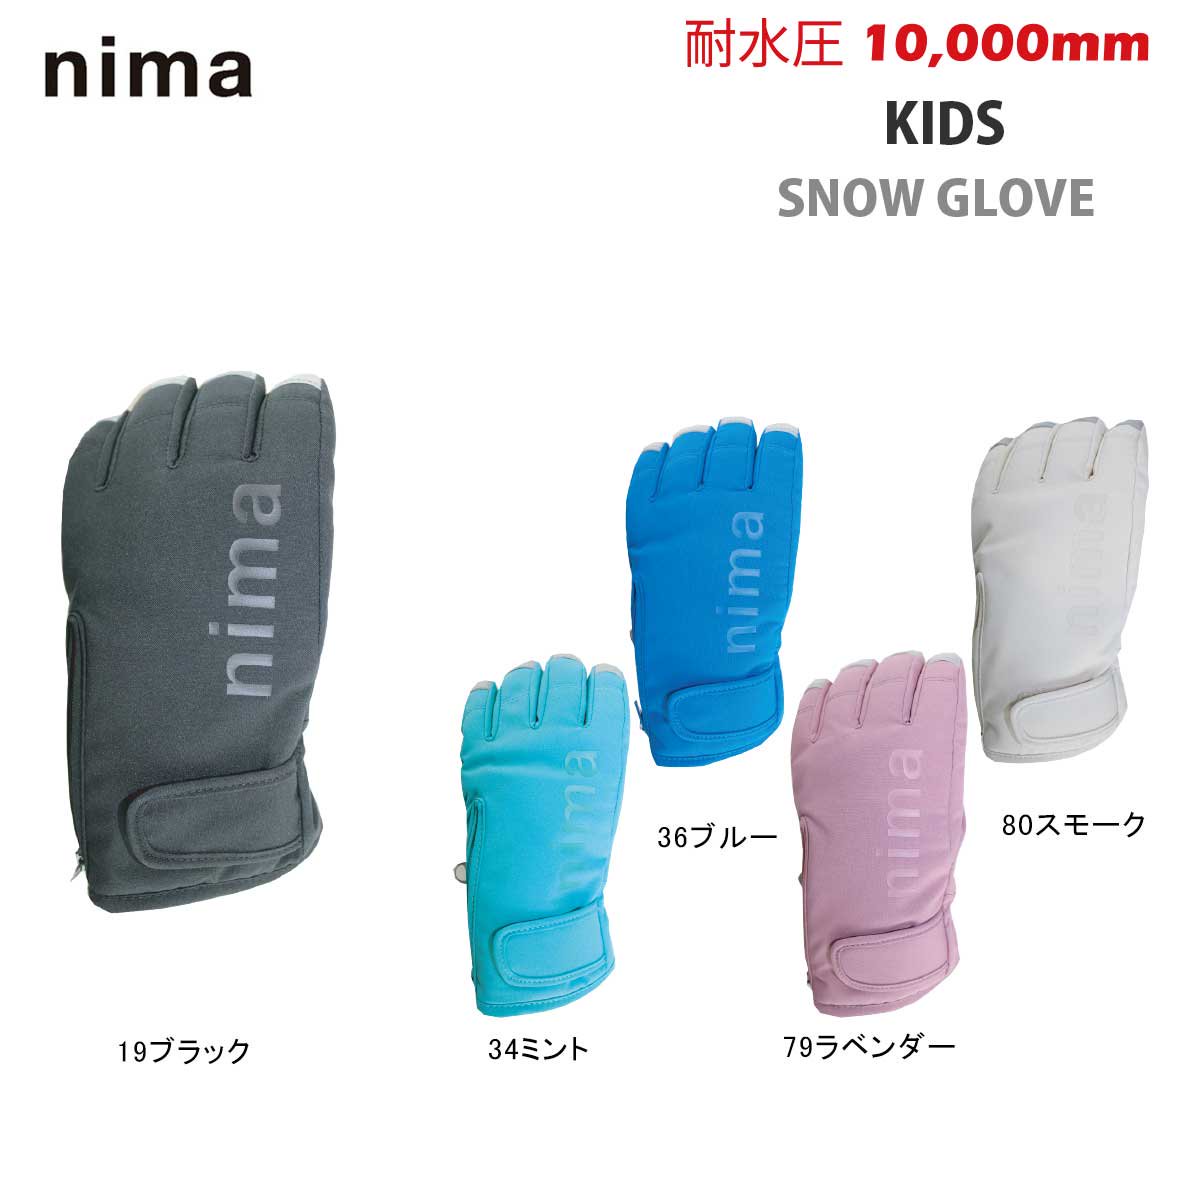 nima(ニーマ) NGJ-754 キッズ スノーグローブ 5本指 スキーグローブ 耐 